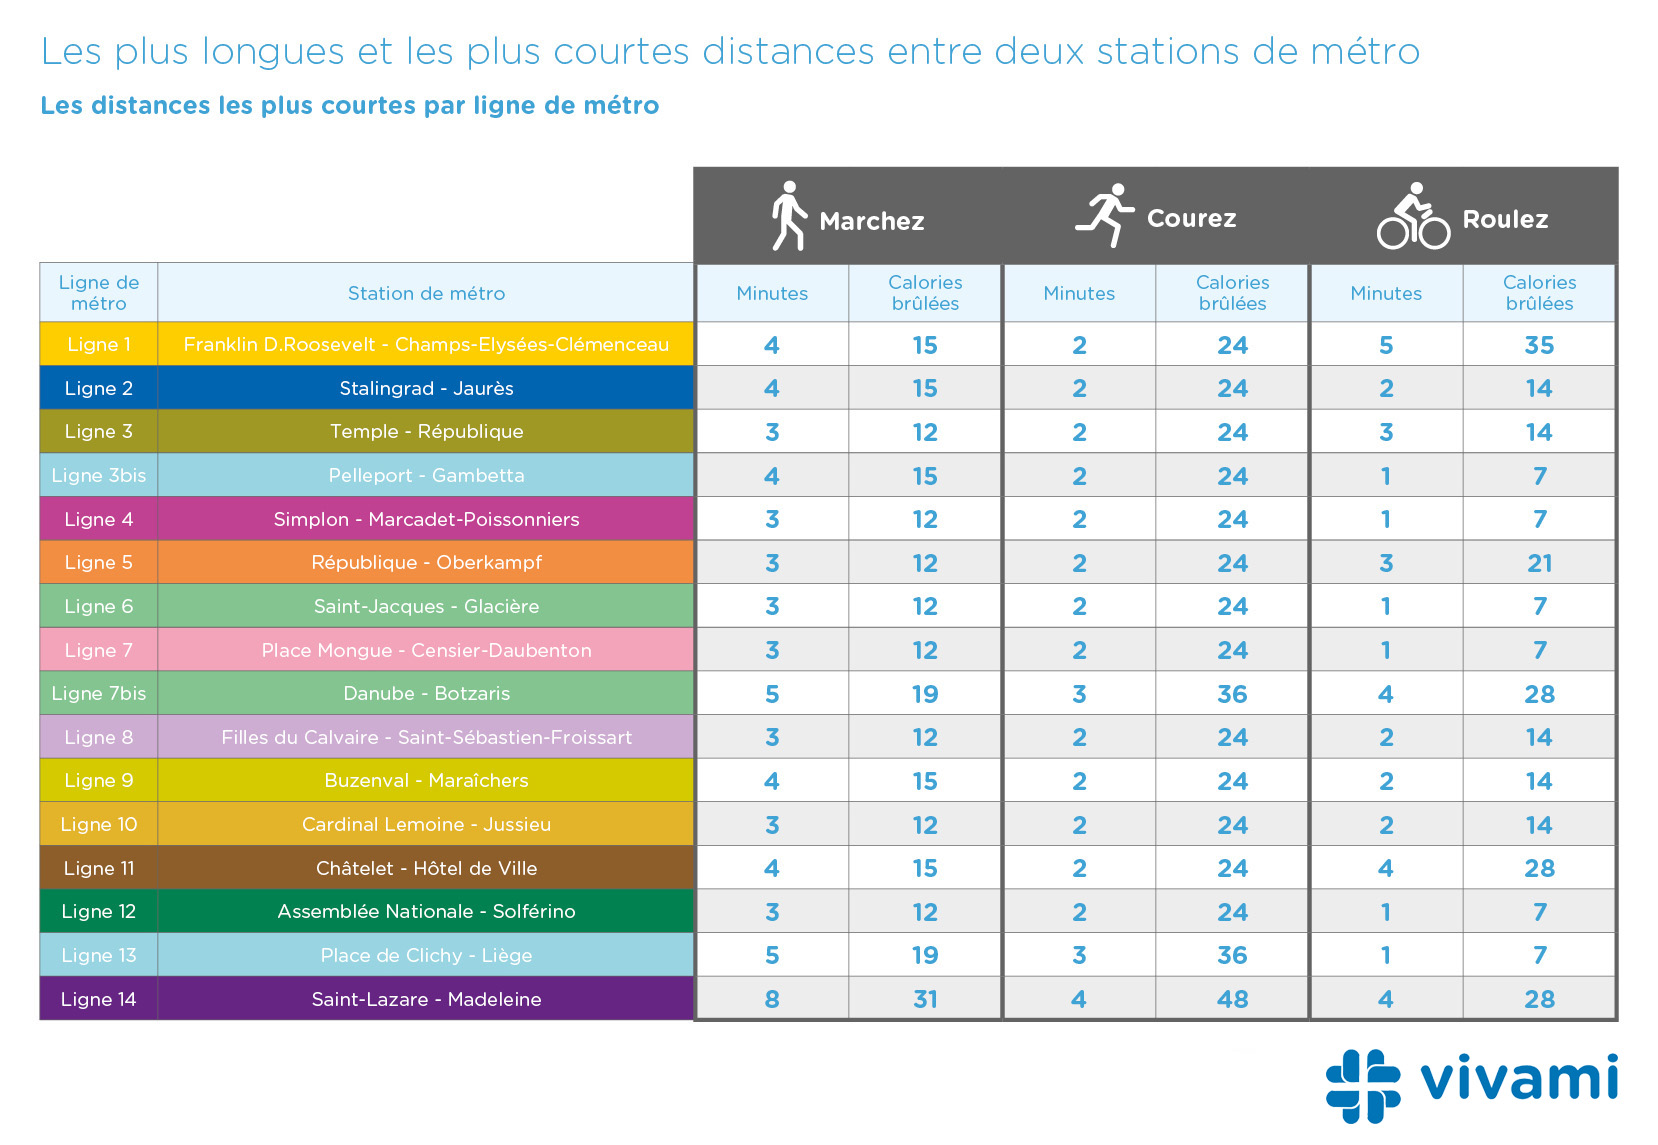 Classement des distances les plus courtes entre deux stations de métro dans Paris par métro - Vivami.co